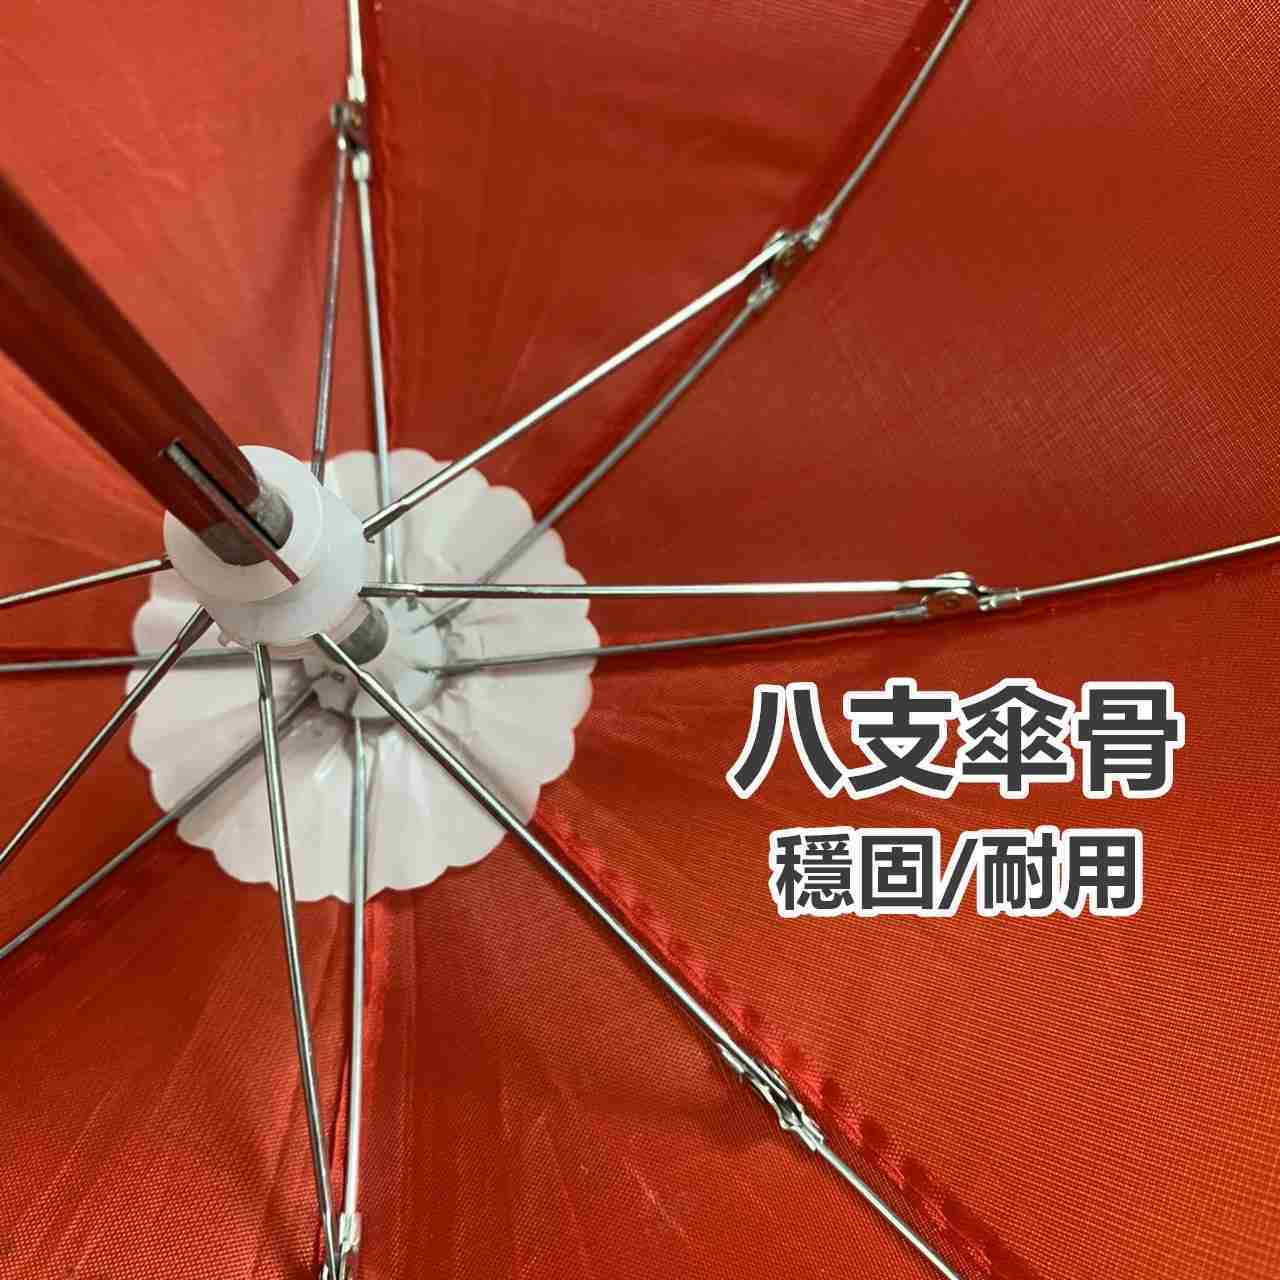 騎機車必備 迷你小雨傘 送束帶 遮陽傘 雨傘 玩具傘 手機架 遮陽小雨傘 小傘 手機小傘【RT018】